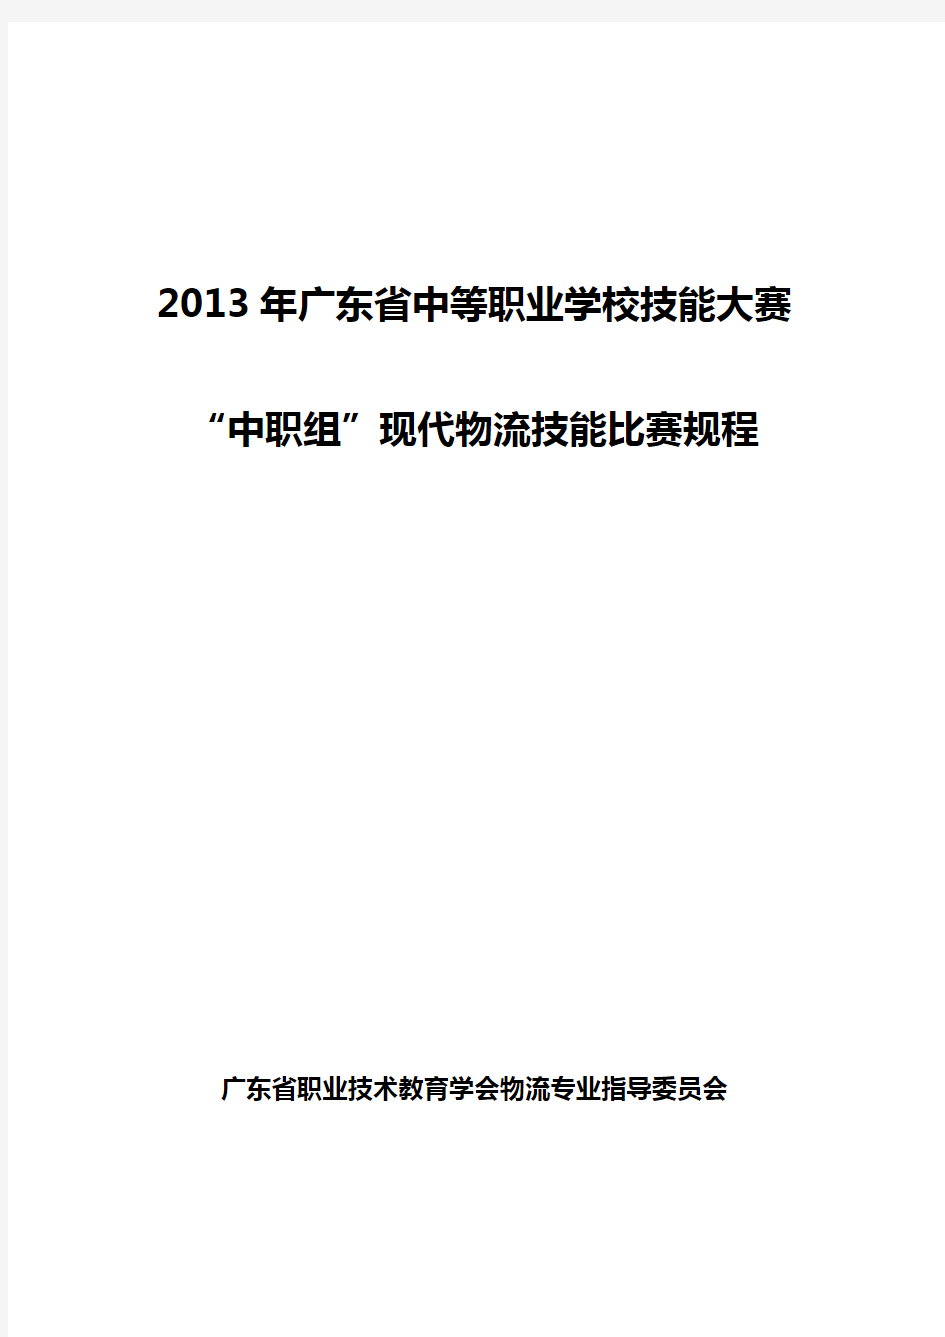 2013年广东省中职学生物流技能比赛规程